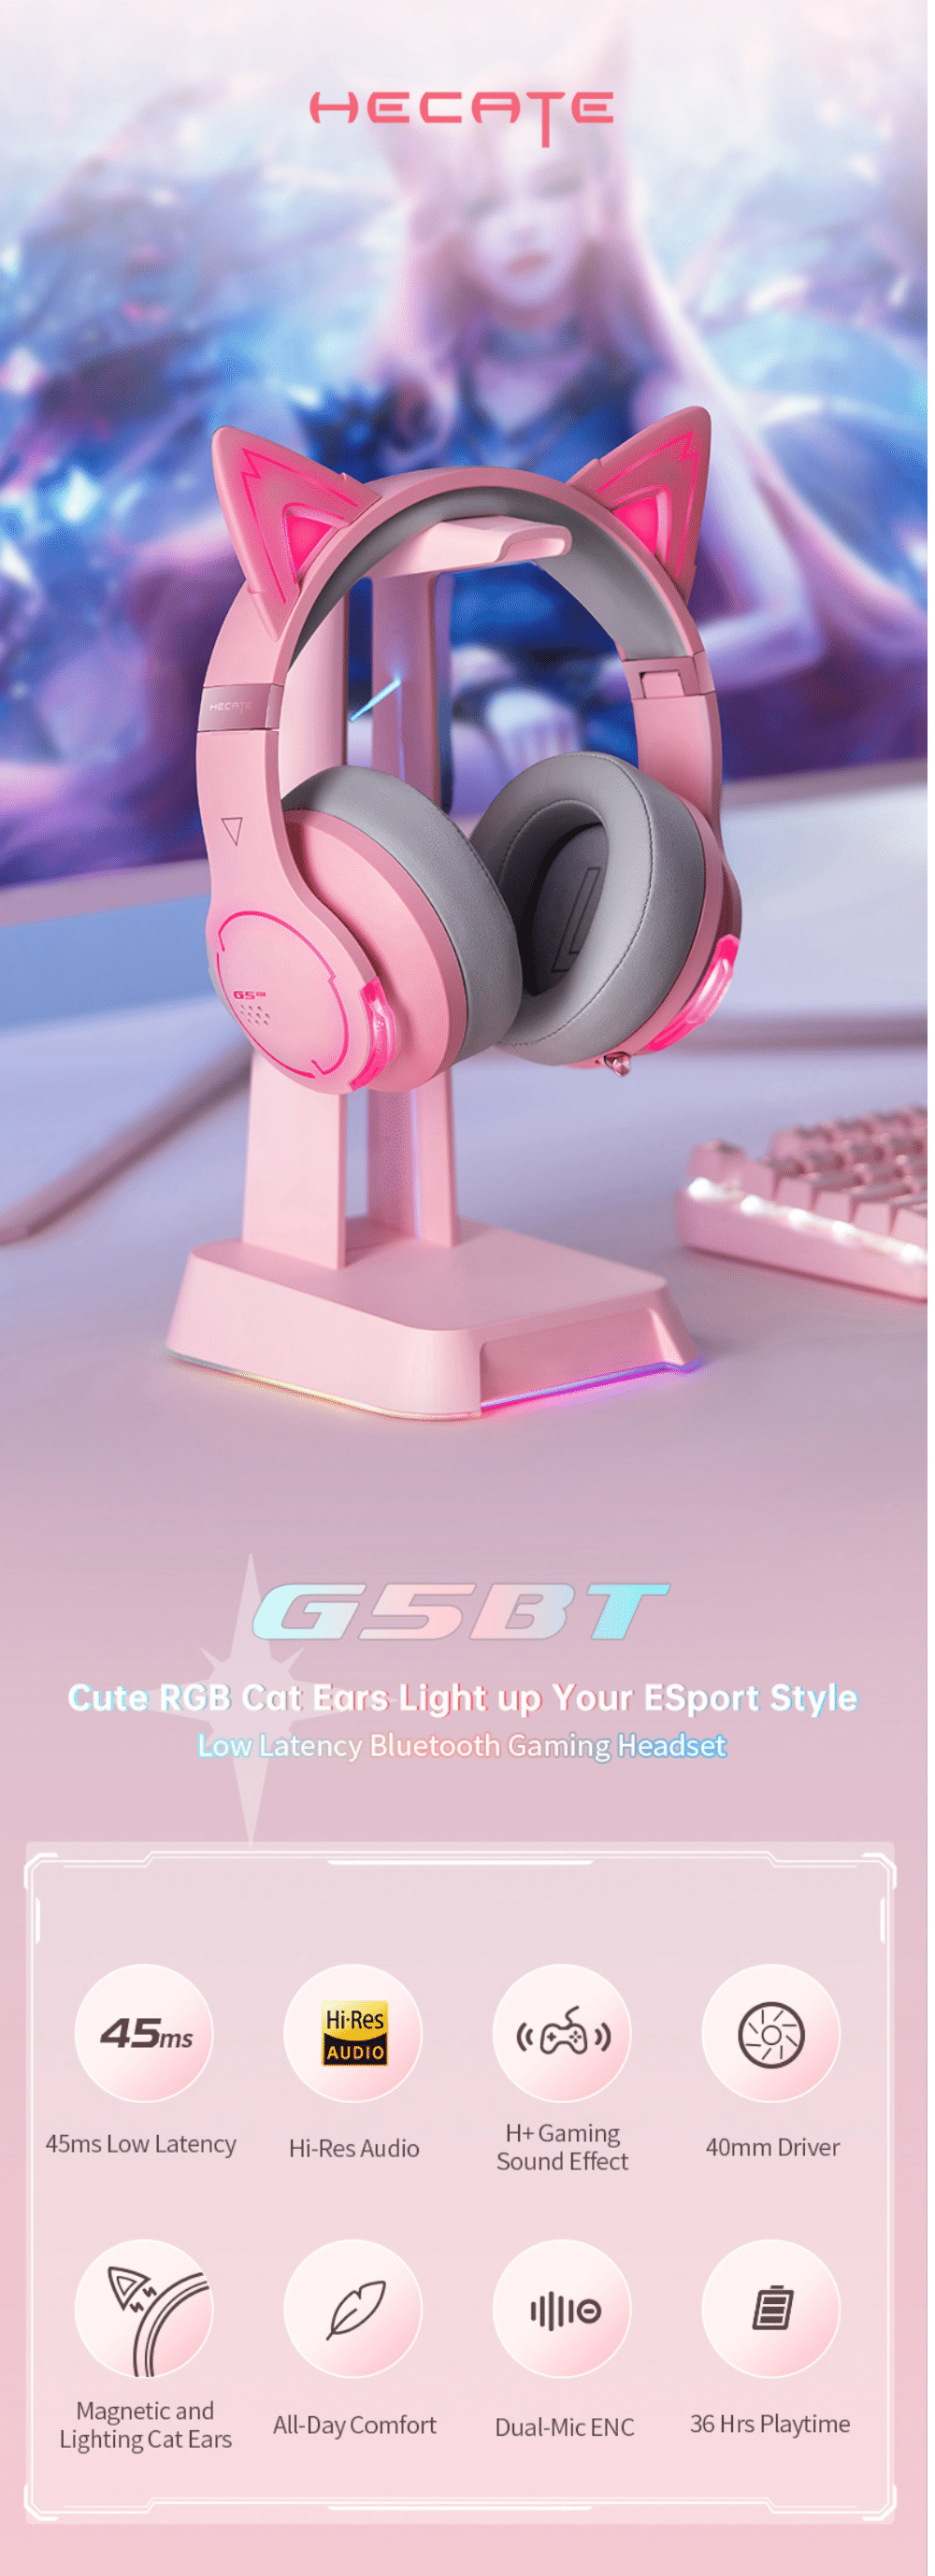 Edifier HECATE G5BT Gaming Headphones 3